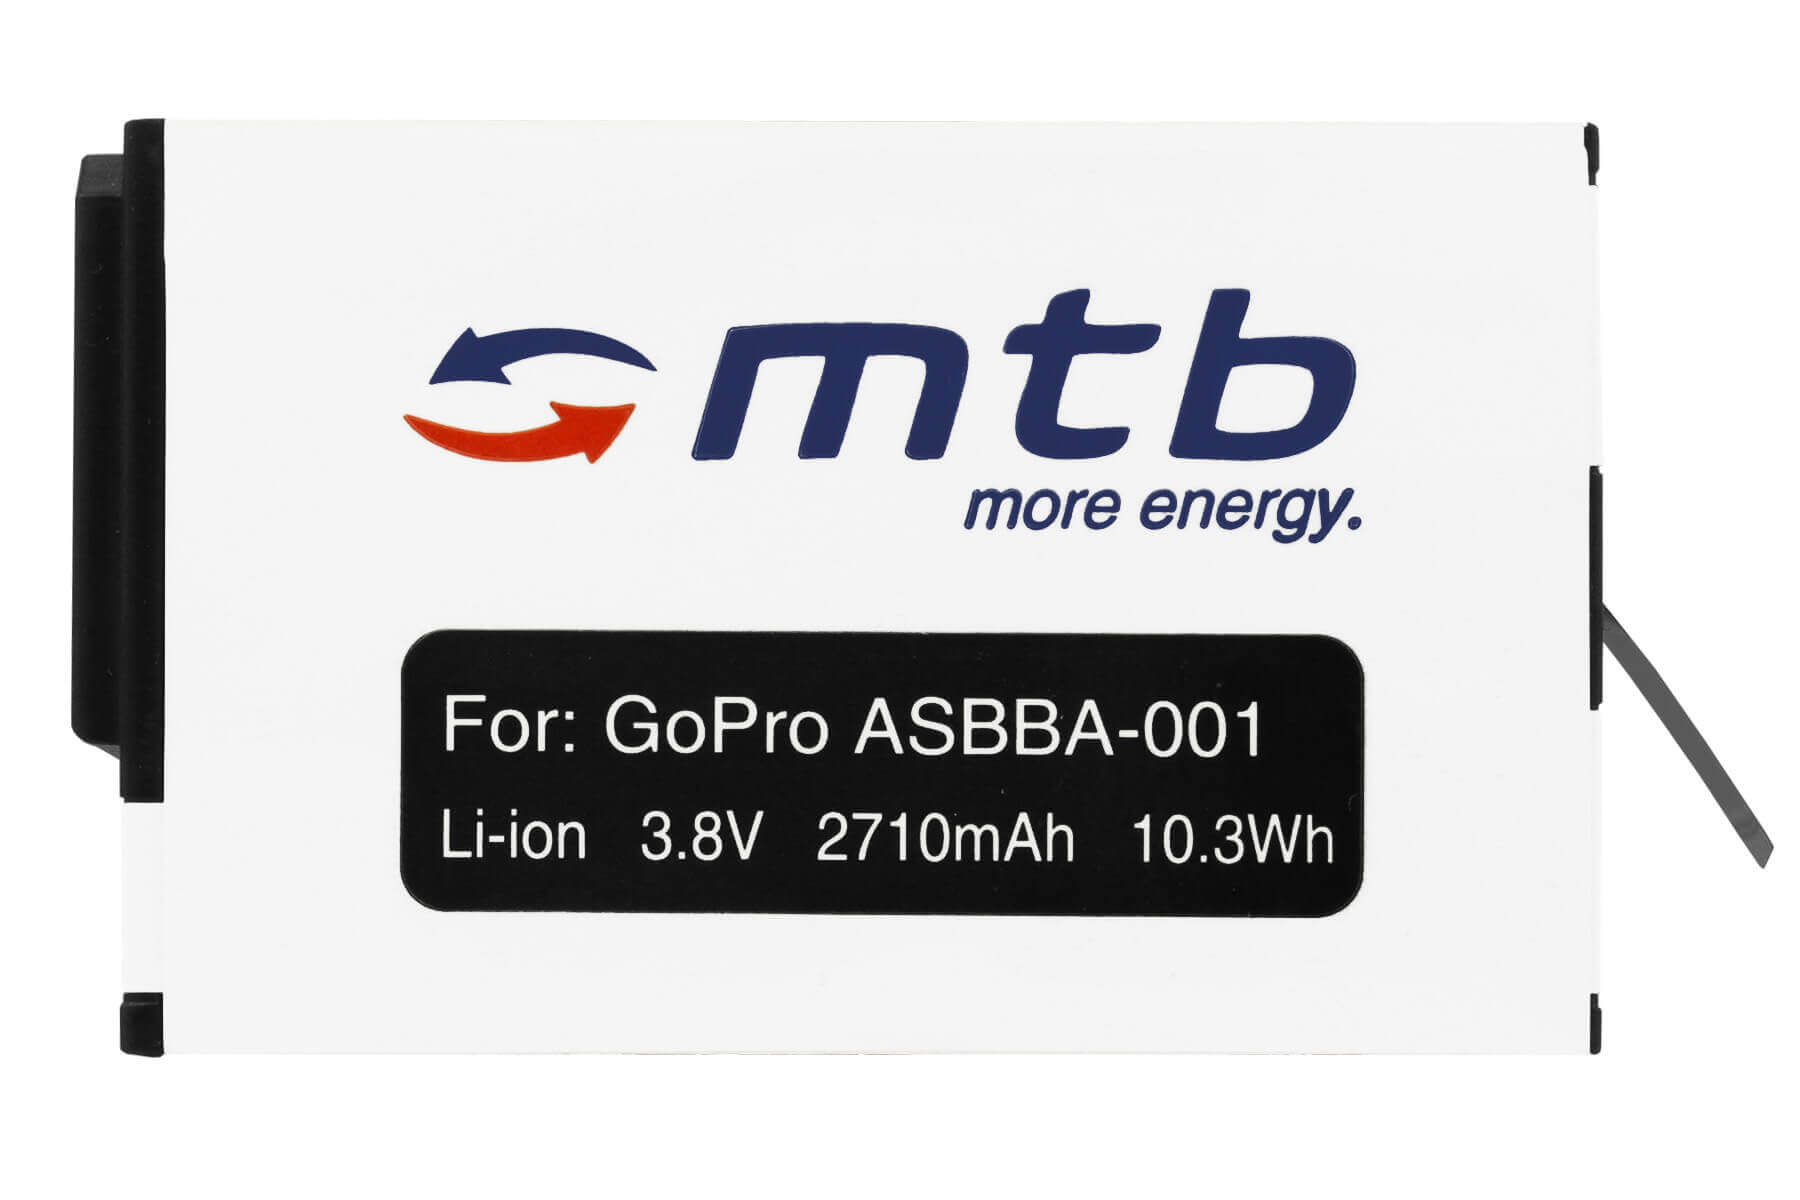 MTB MORE ENERGY ASBBA-001 mAh 2710 BAT-483 Li-Ion, Akku